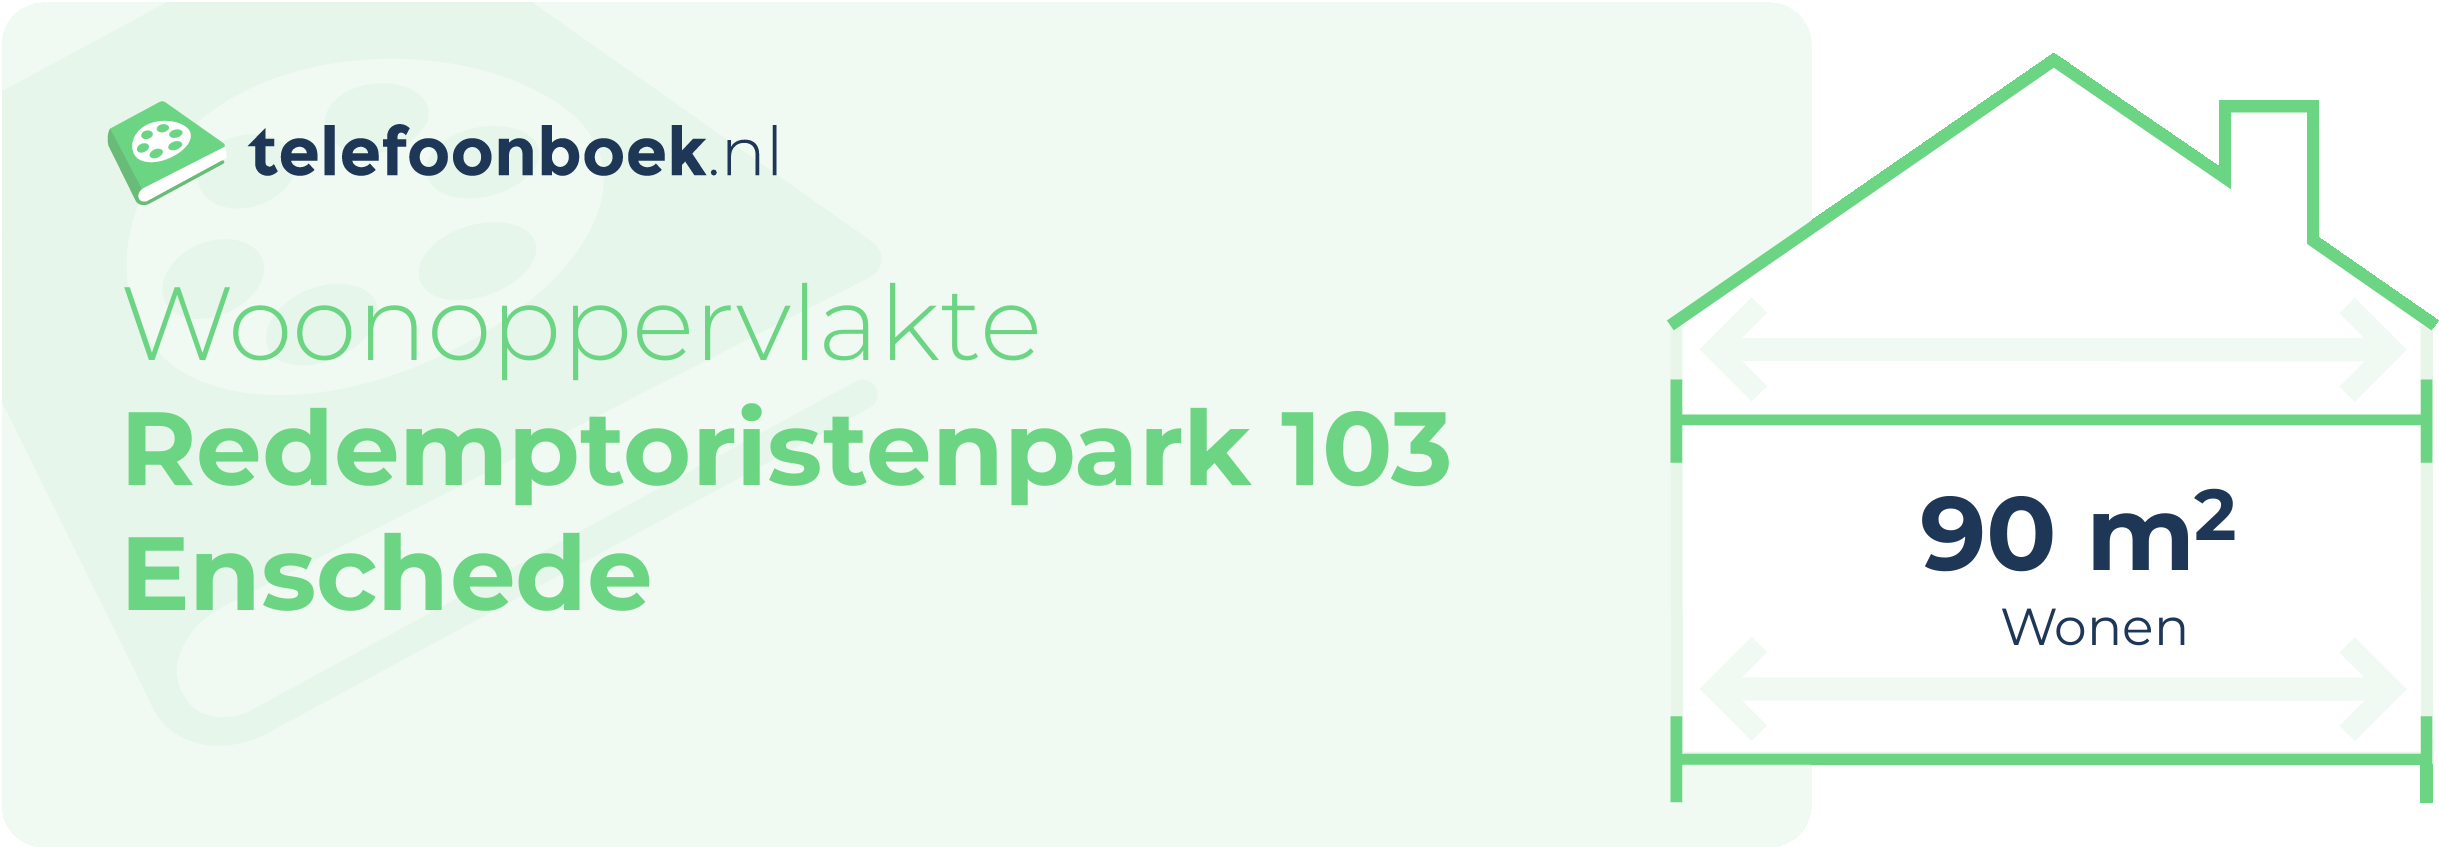 Woonoppervlakte Redemptoristenpark 103 Enschede